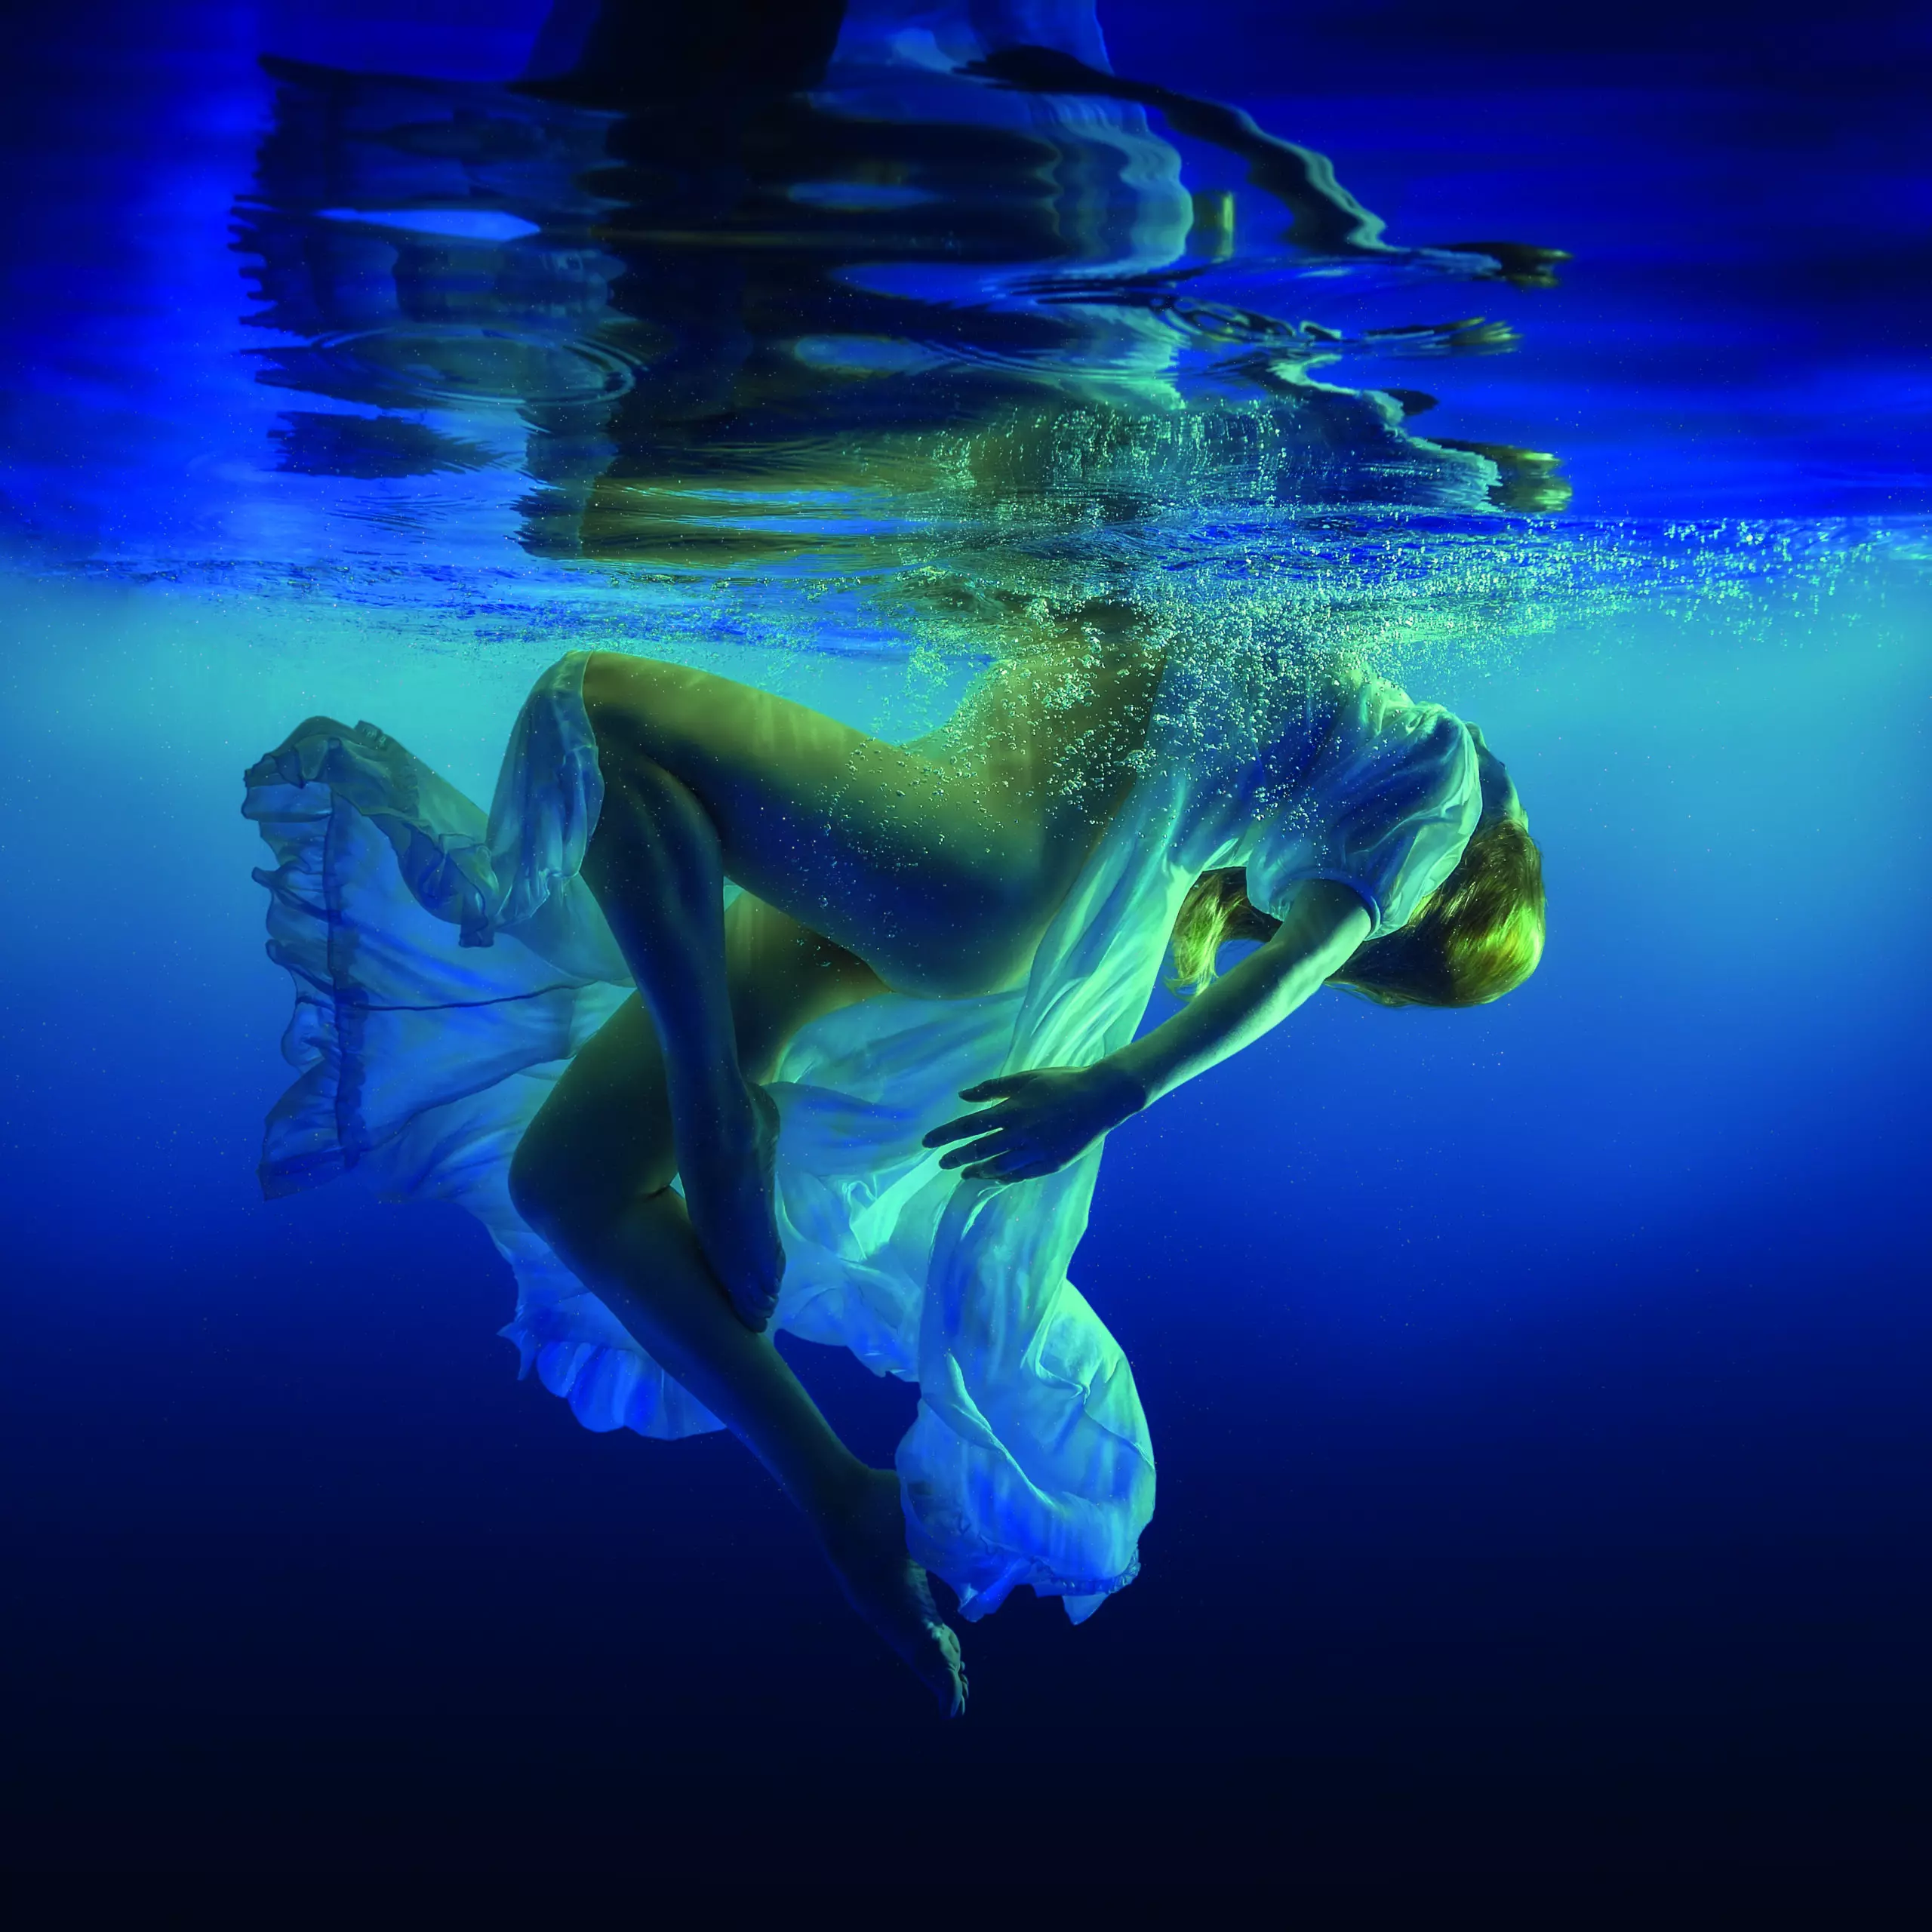 Wandbild (5287) Dance by D.Laudin präsentiert: Menschen,Wasser,Kreatives,Frauen,Unterwasser,Sonstiges Kreatives